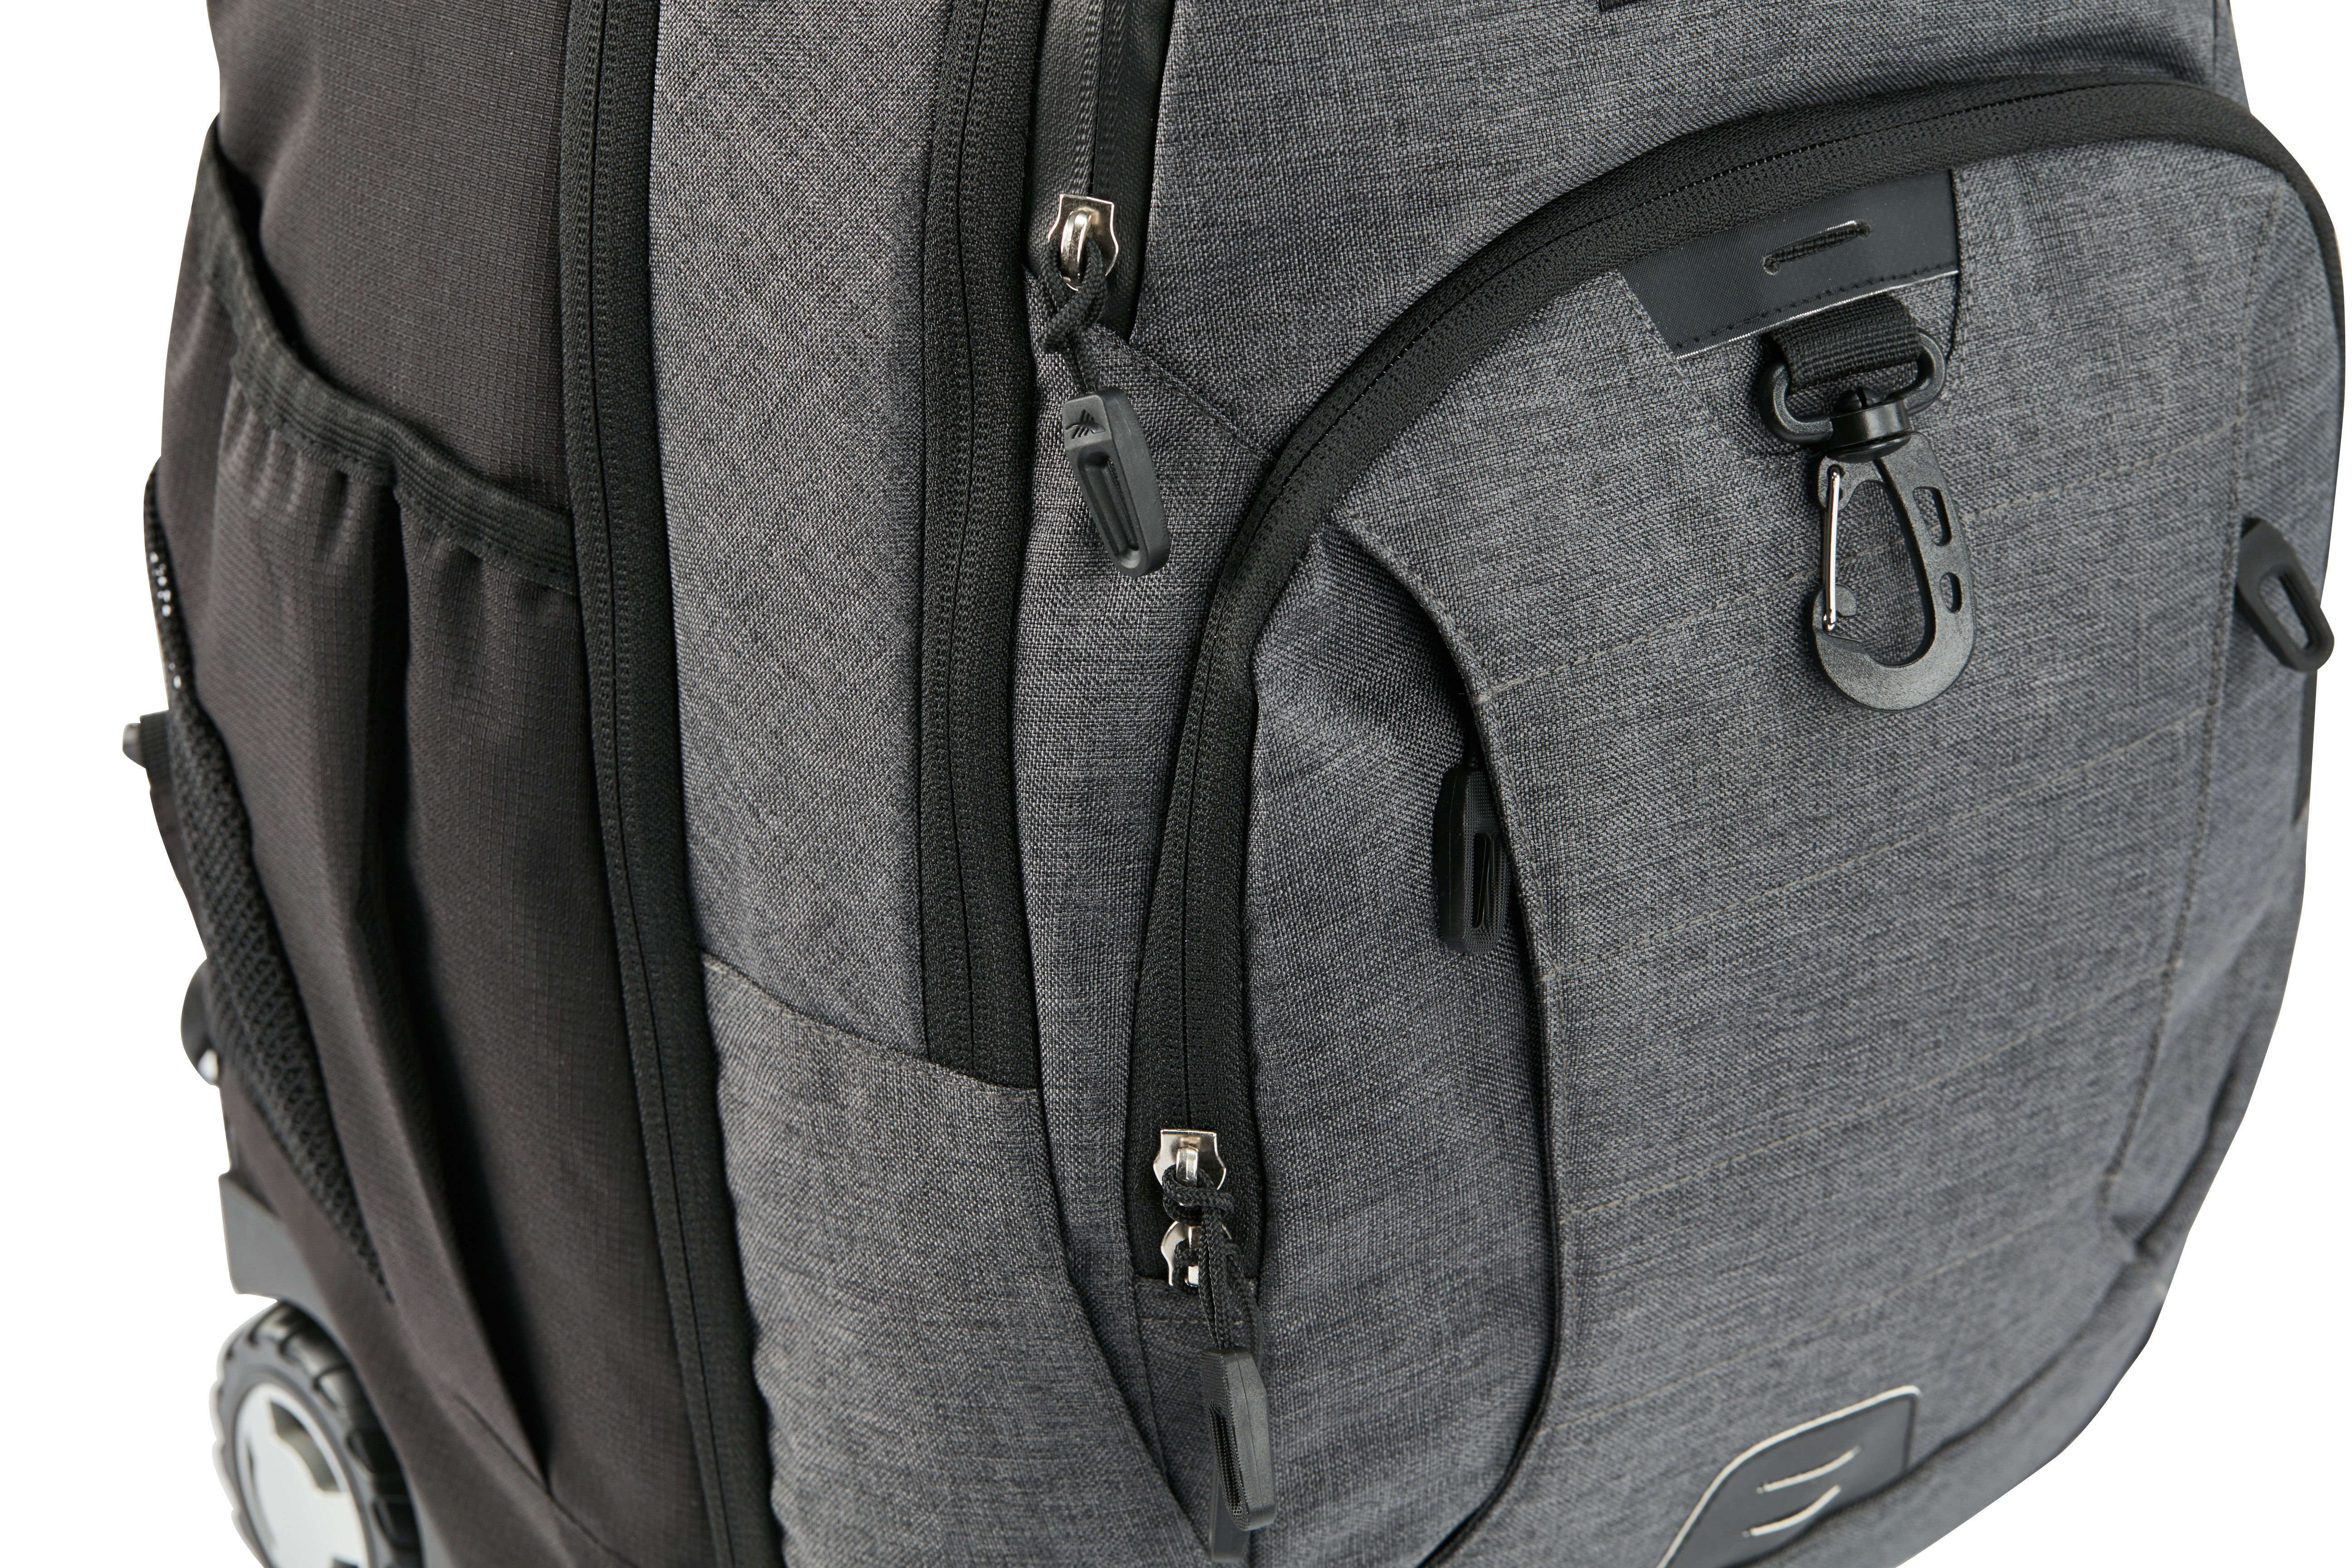 High Sierra - Jarvis Pro backpack on wheels - Black-11